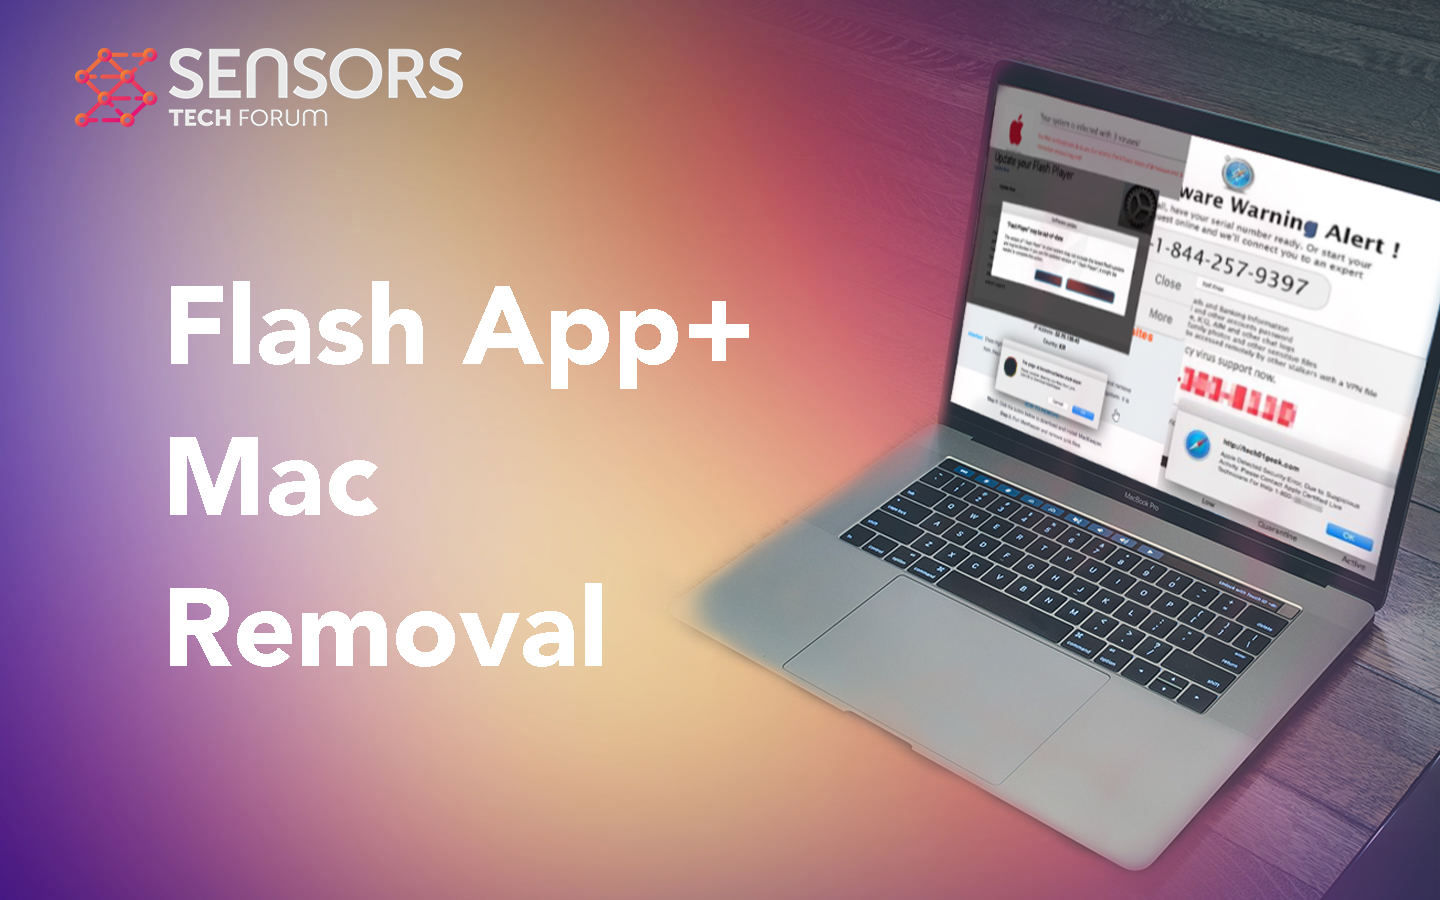 Flash App+ guia de remoção de mac grátis